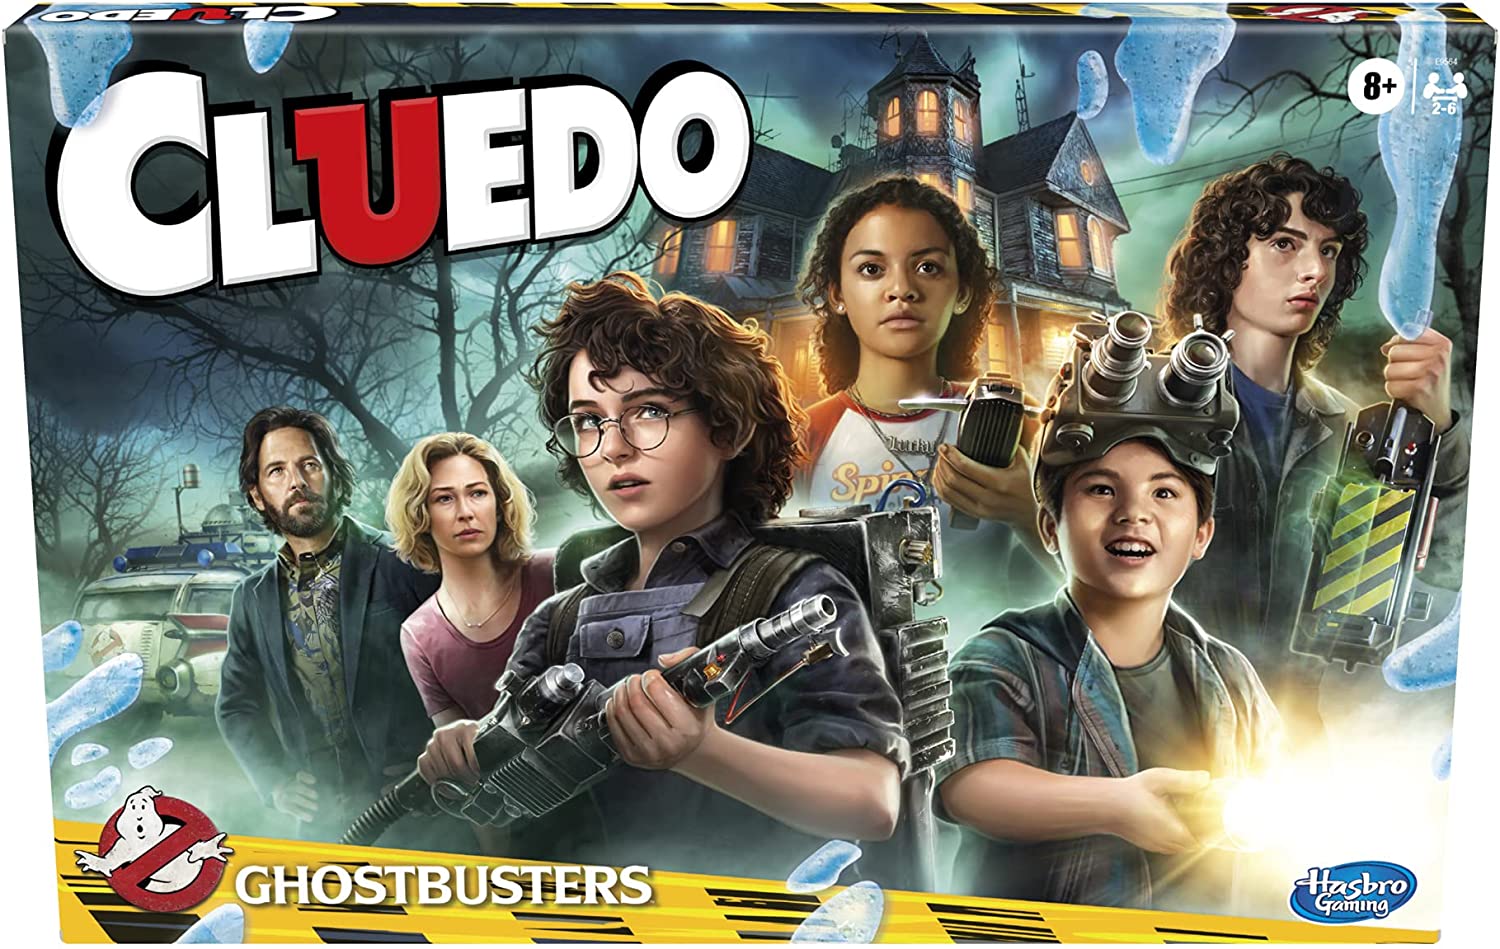 servidor dejar Reina Ghostbusters Cluedo Edición Italiana Juego de Mesa Hasbro | eBay